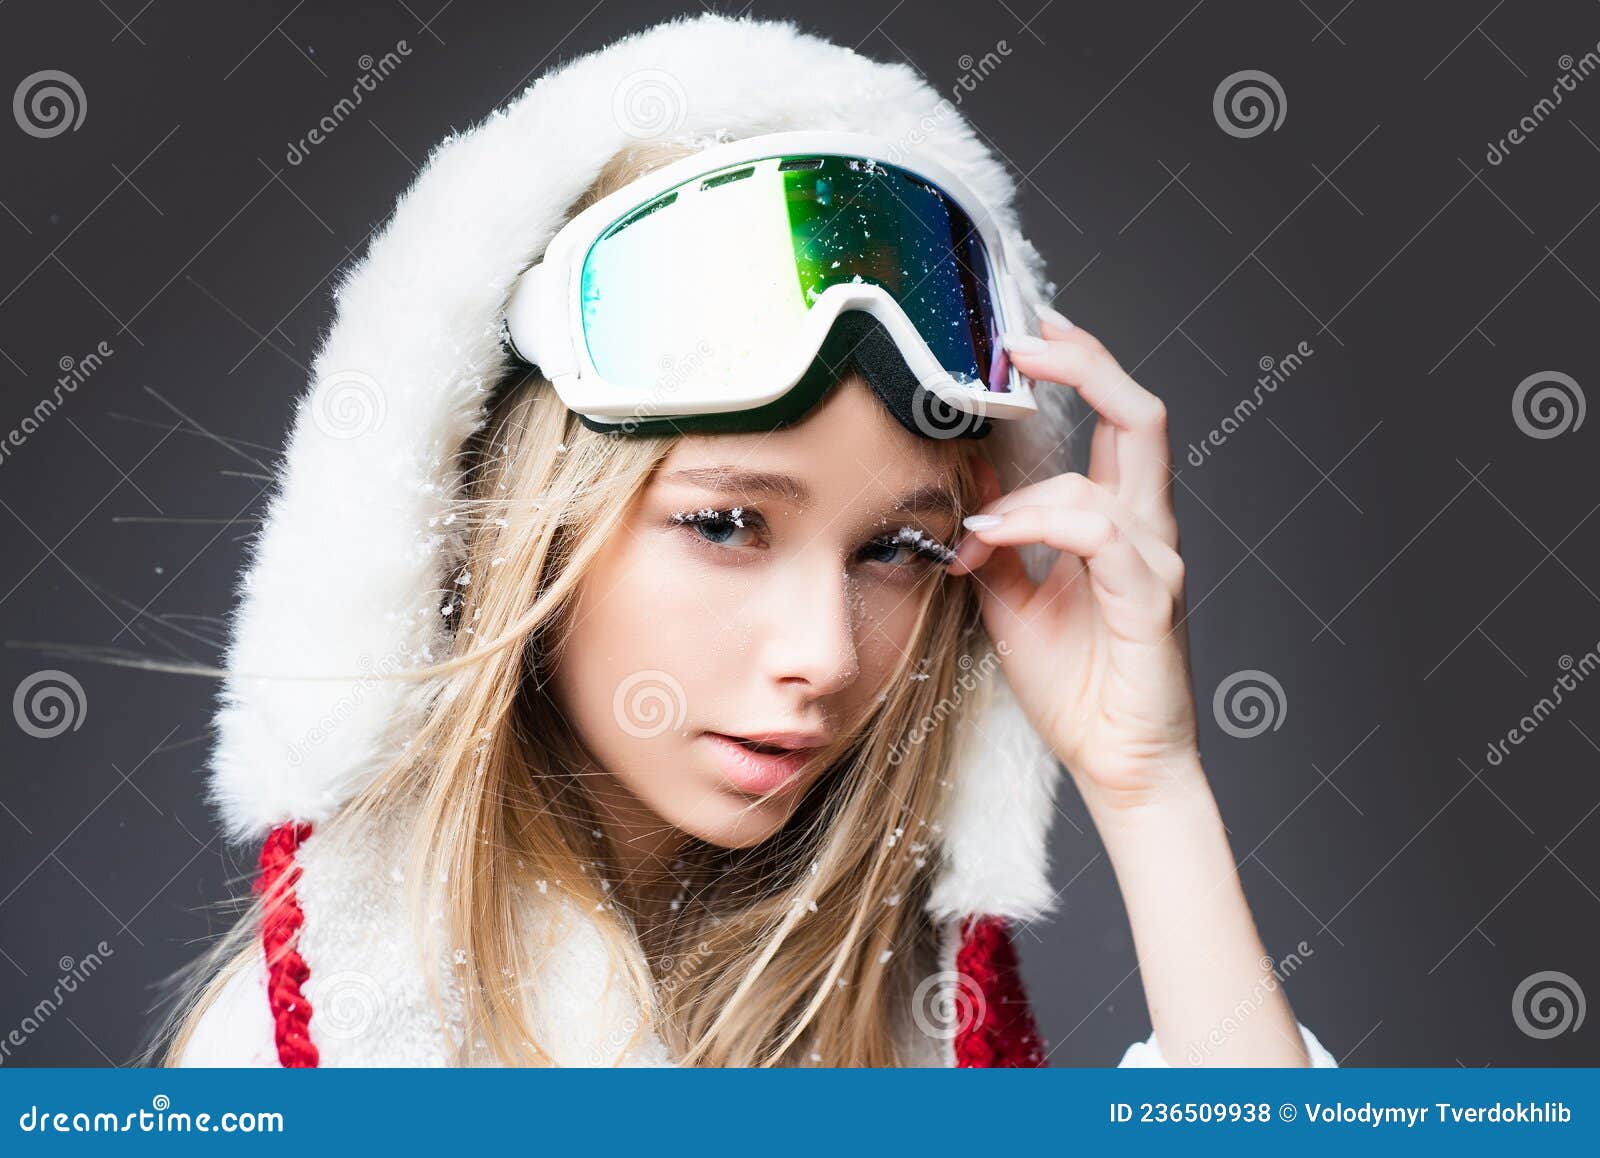 Donna Snowboarder Con Posate Da Sci Con Occhiali Da Sci. Ritratto Di Una  Ragazza Con Occhiali Da Neve. Fotografia Stock - Immagine di quindici,  natale: 236509938